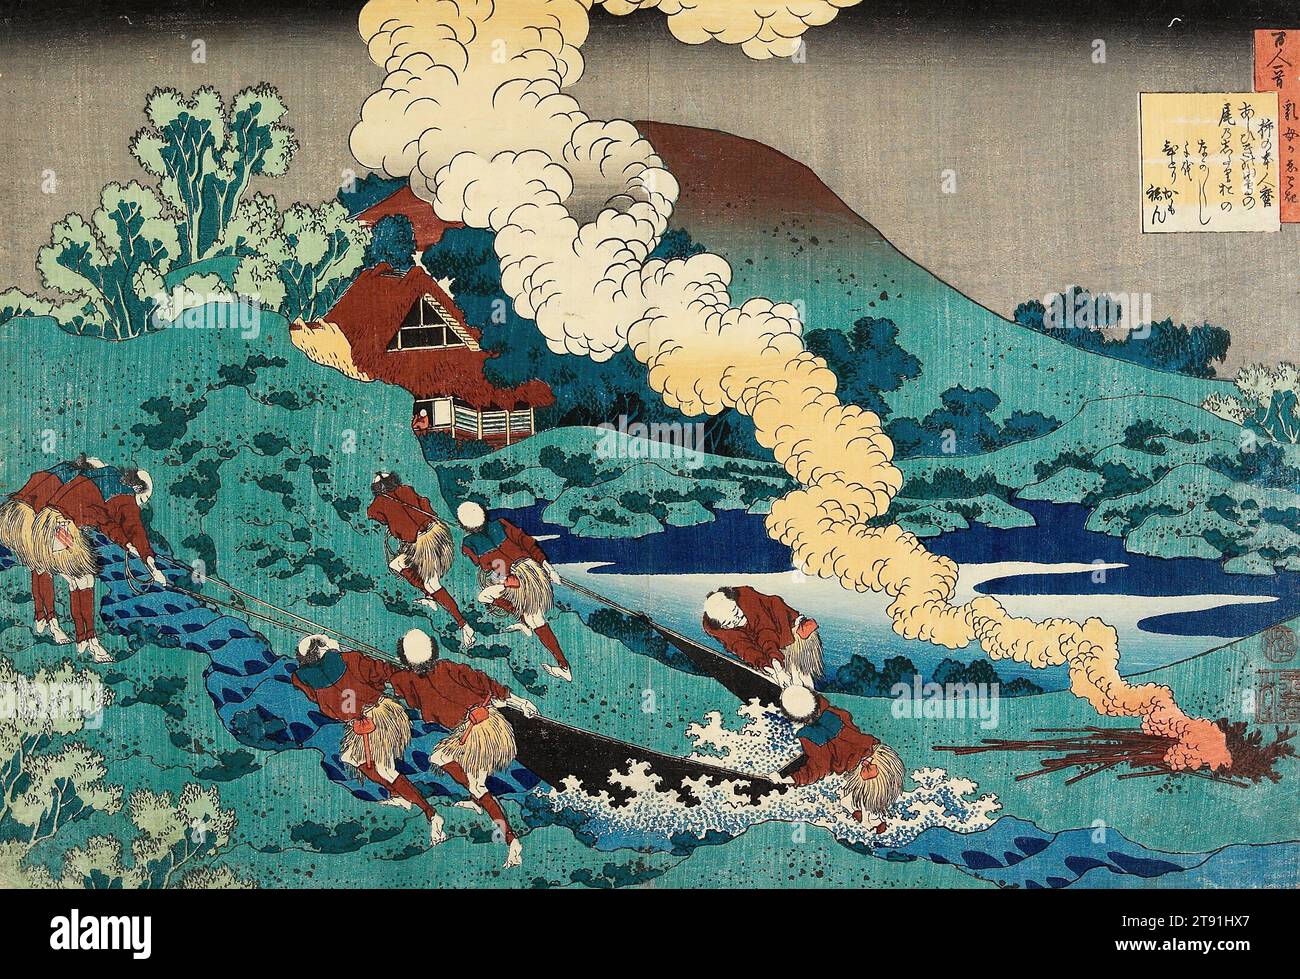 Poema de Kakinomoto no Hitomaro, c. 1835-1836, Katsushika Hokusai; Editorial: Nishimuraya Yohachi, Japonés, 1760 - 1849, 9 7/8 x 14 3/8 in. (25,1 x 36,5 cm) (imagen, hoja, ōban horizontal), impresión en madera (nishiki-e); tinta y color sobre papel, Japón, siglo XIX, alrededor de 1835, Hokusai se embarcó en el enorme proyecto de ilustrar uno de los cien poemas contenidos en el Hyakunin Isshu, una antología de poesía imperial compilada por Fujiwara no Teika (1162-1241) en 1235. Foto de stock